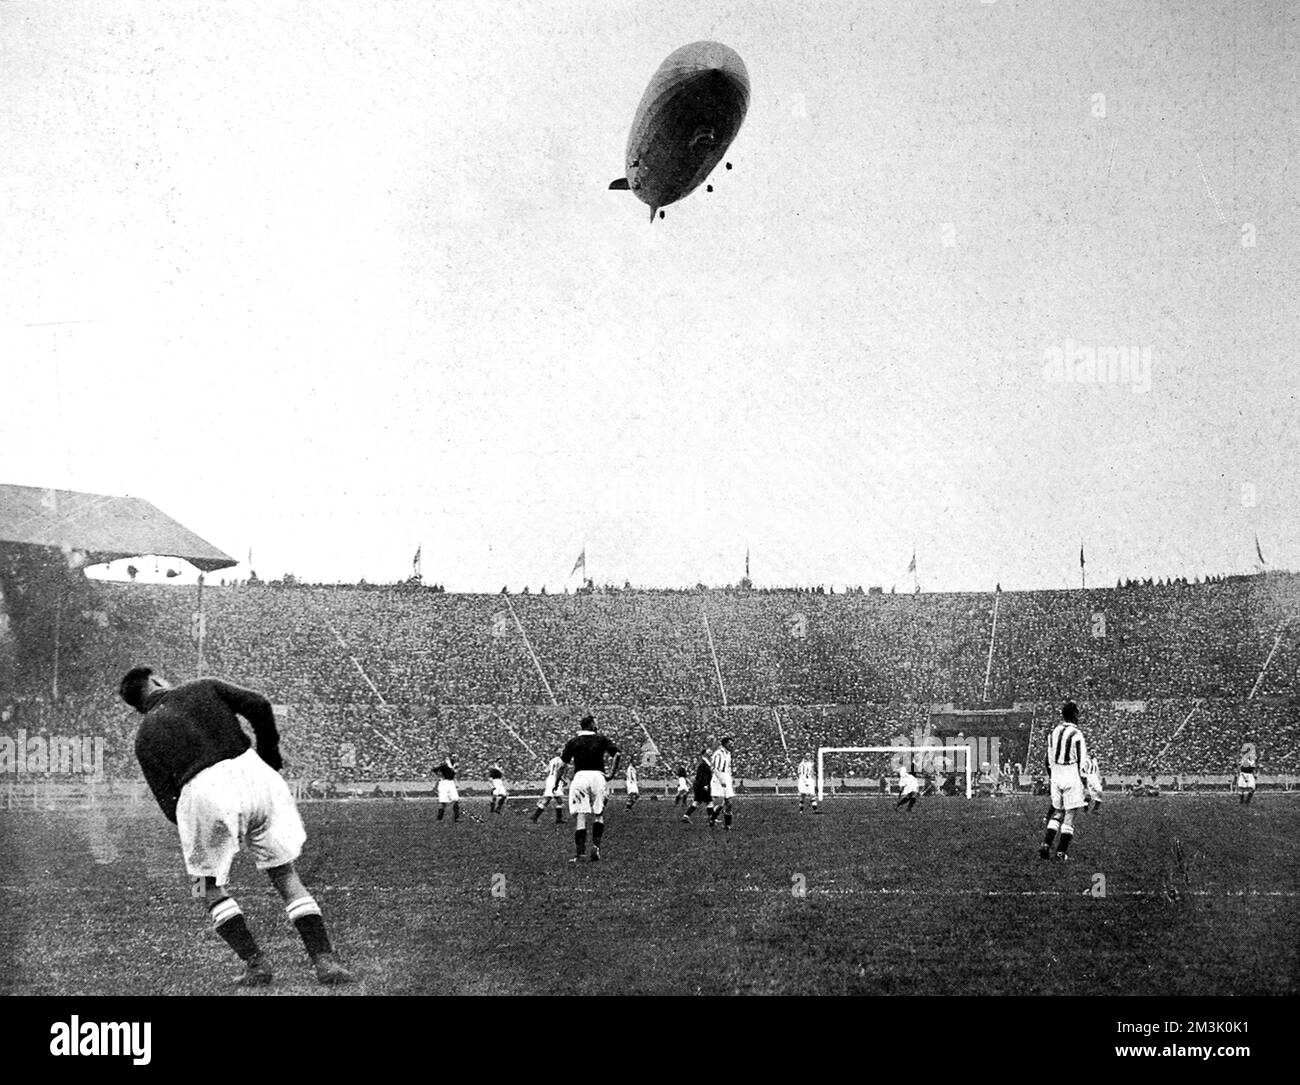 Stadio di Wembley, durante la città di Huddersfield contro l'Arsenal F.A. Coppa finale del 1930, con il 'Graf Zeppelin' nel cielo sopra. Si è riferito che il velivolo tedesco "si è mantenuto molto basso a terra, sconcertando giocatori e spettatori con il ruggito assordante dei suoi motori”. Arsenal ha vinto la partita 2-0. Data: 1930 Foto Stock